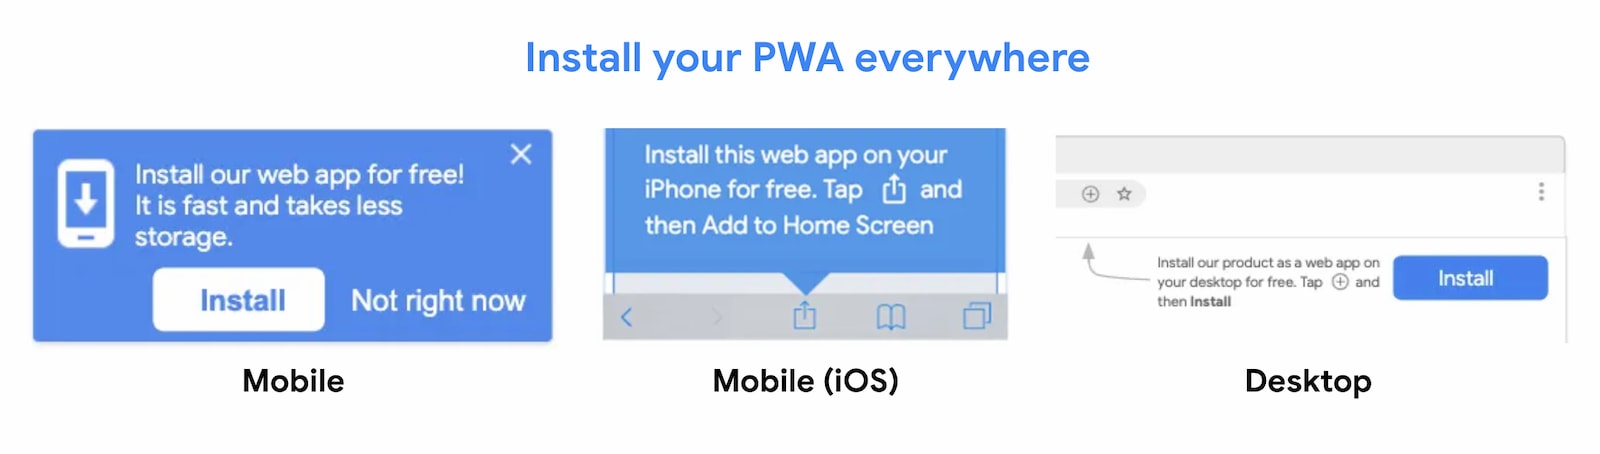 PWA 随处安装。